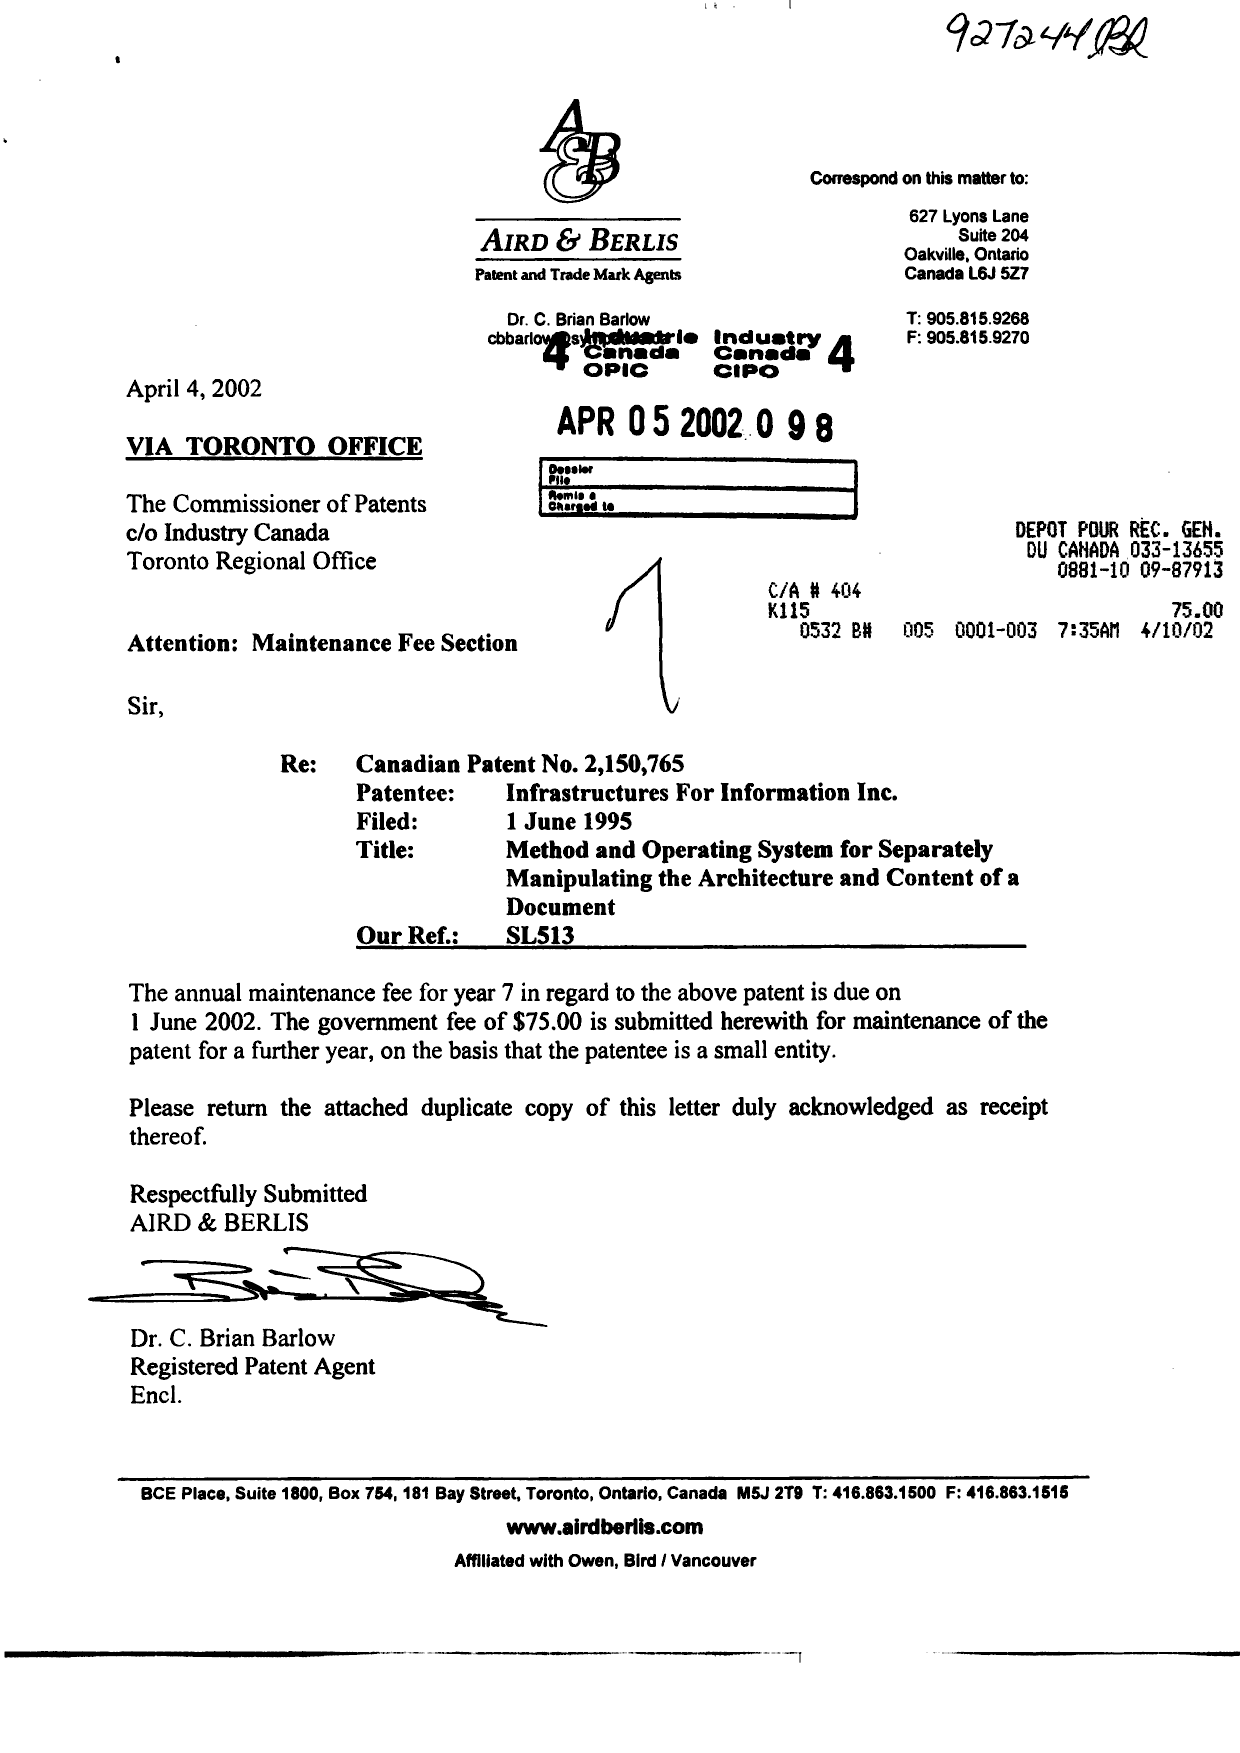 Document de brevet canadien 2150765. Taxes 20020405. Image 1 de 1